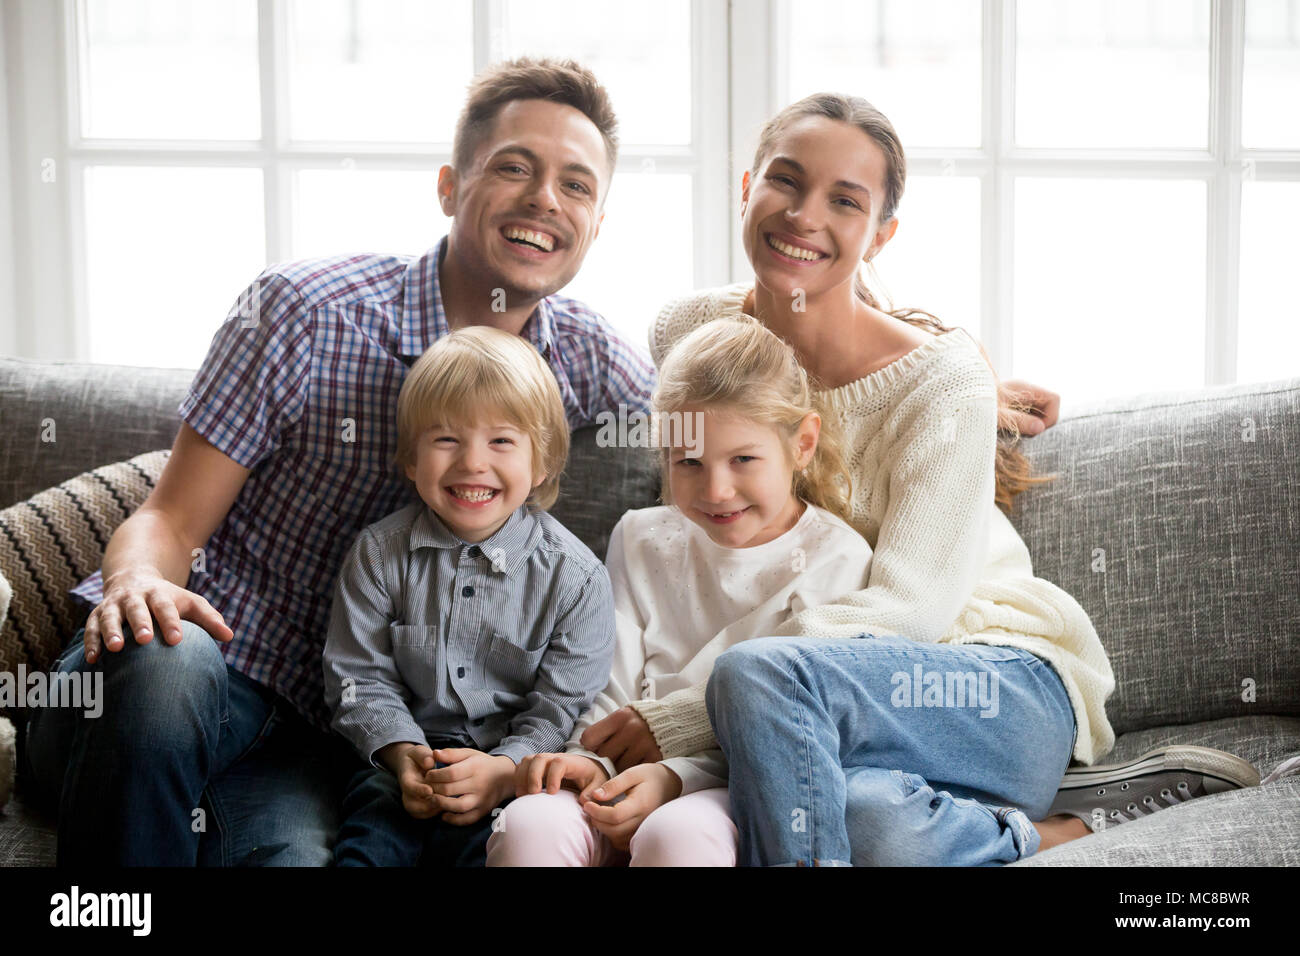 Portrait de famille multinationale heureux avec les enfants adoptés de rire ensemble, de collage smiling young couple embracing boy fils et fille fille assise o Banque D'Images